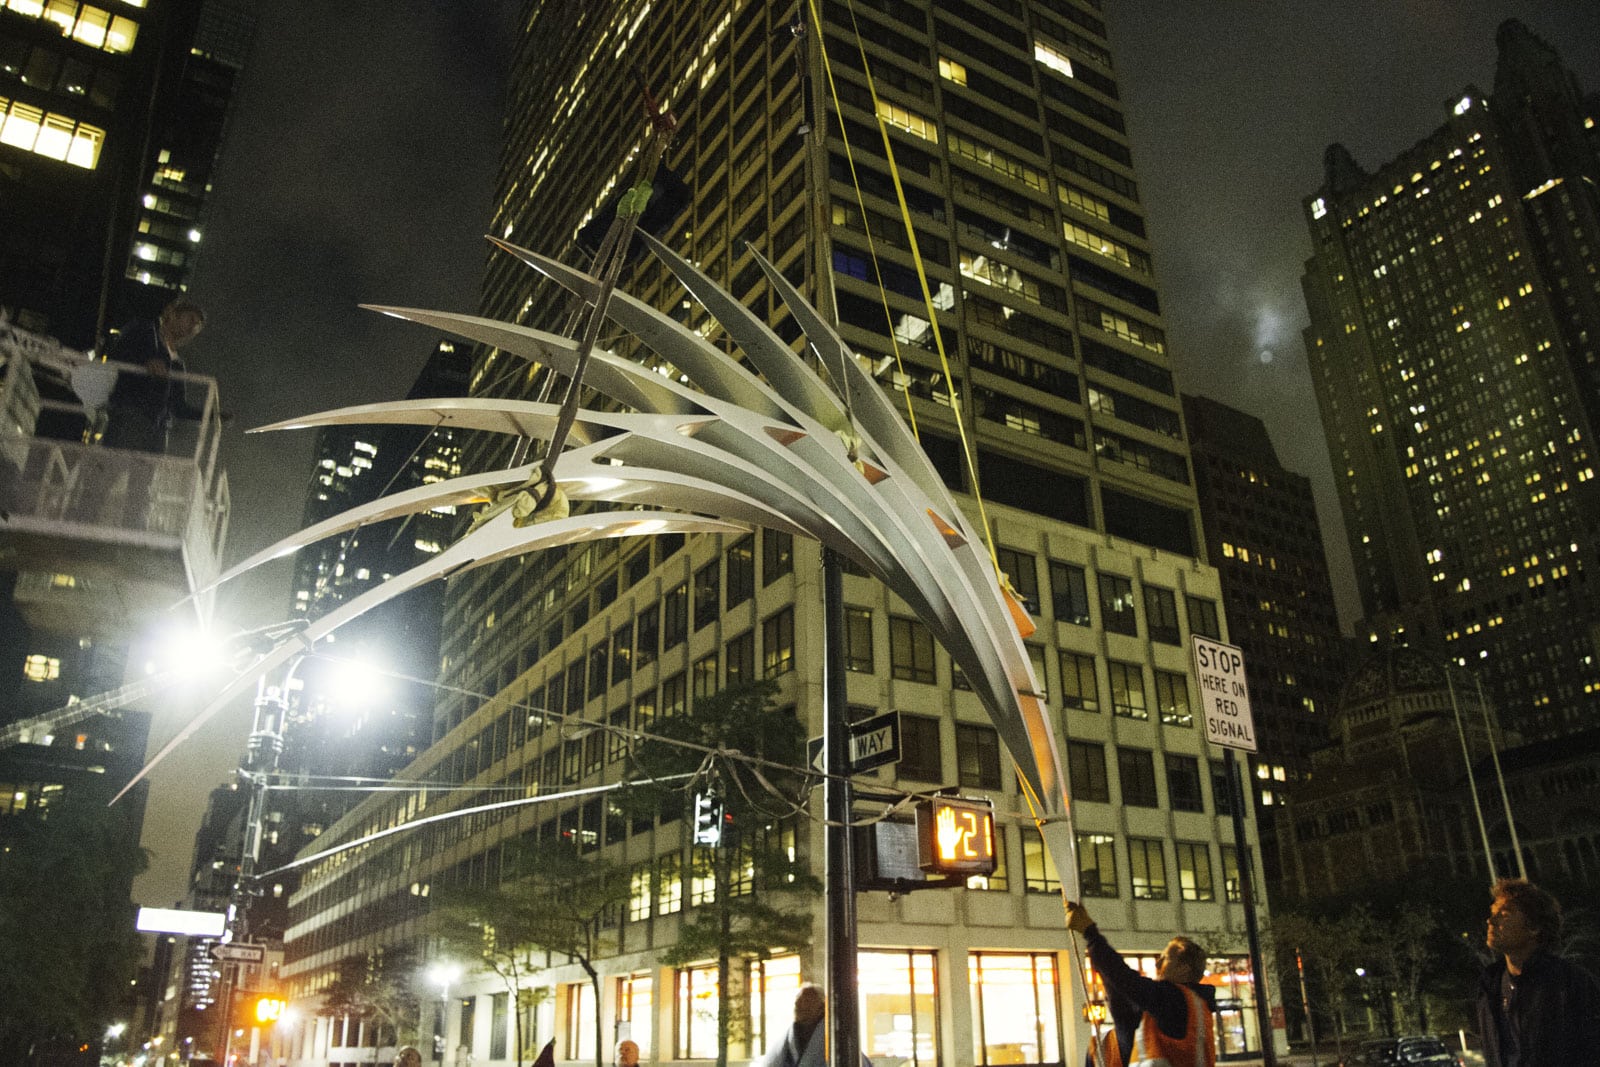 Installing Santiago Calatrava's sculpture S2